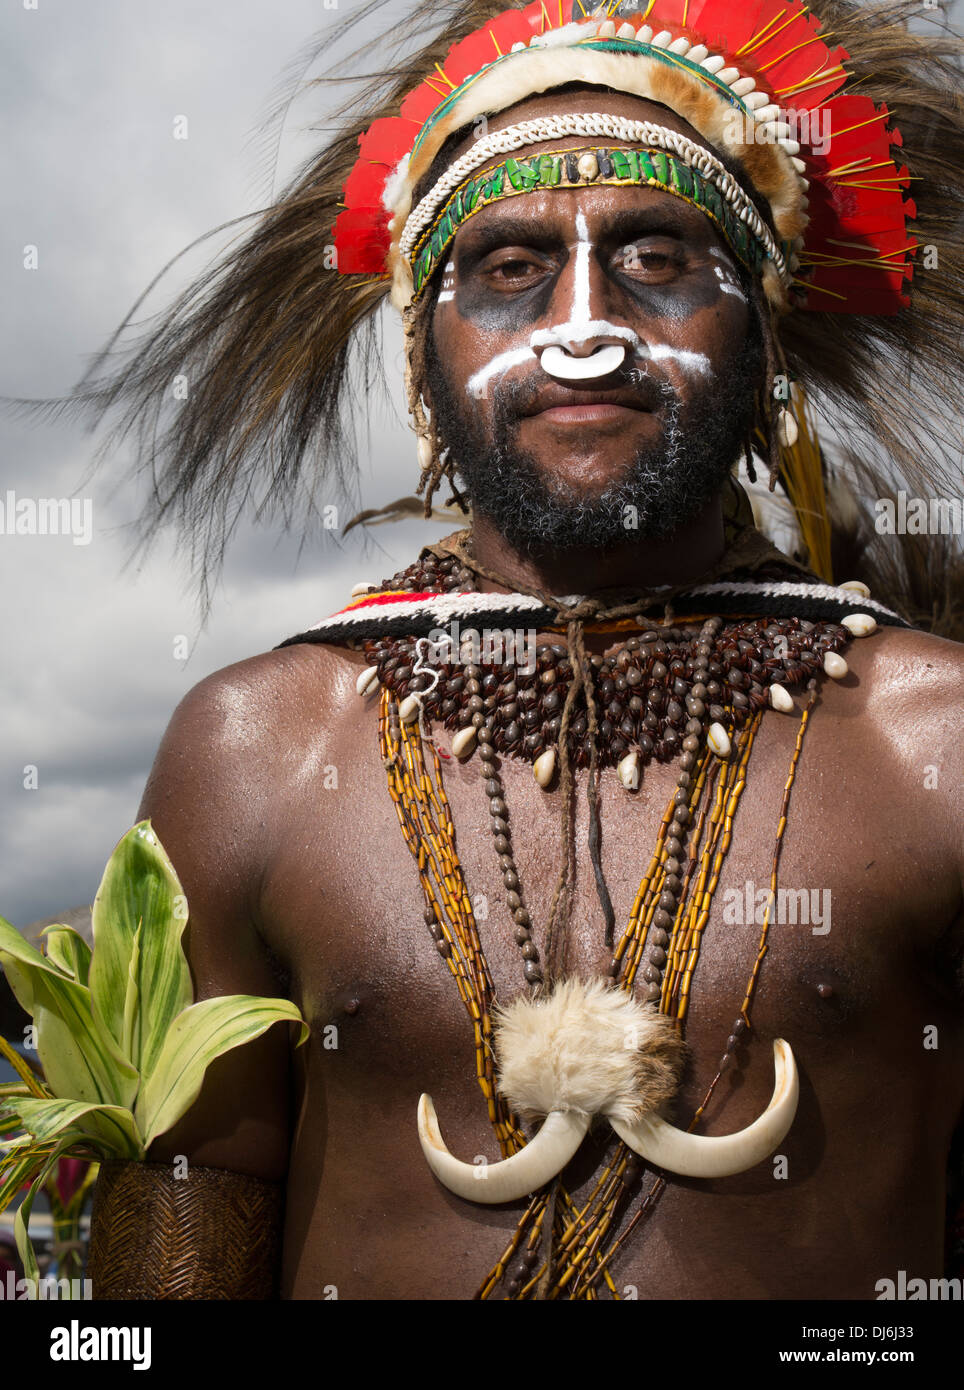 Portrait des aînés tribaux avec coiffe, collier avec des défenses de sanglier et la peinture pour le visage à Goroka Show festival tribal singsing. P N G Banque D'Images